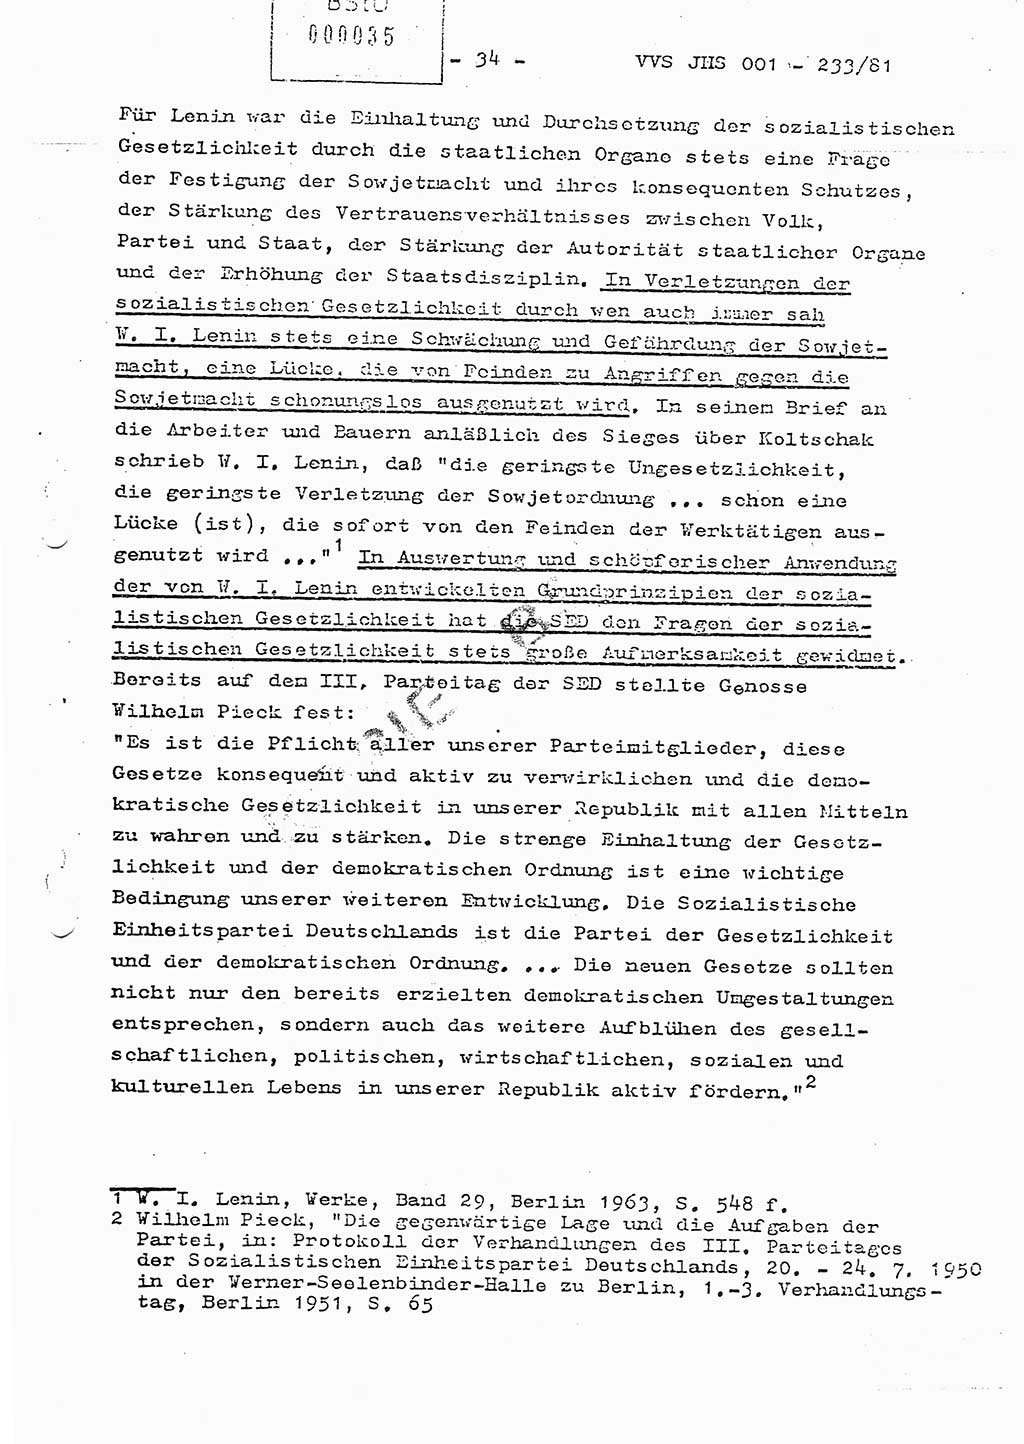 Dissertation Oberstleutnant Horst Zank (JHS), Oberstleutnant Dr. Karl-Heinz Knoblauch (JHS), Oberstleutnant Gustav-Adolf Kowalewski (HA Ⅸ), Oberstleutnant Wolfgang Plötner (HA Ⅸ), Ministerium für Staatssicherheit (MfS) [Deutsche Demokratische Republik (DDR)], Juristische Hochschule (JHS), Vertrauliche Verschlußsache (VVS) o001-233/81, Potsdam 1981, Blatt 35 (Diss. MfS DDR JHS VVS o001-233/81 1981, Bl. 35)